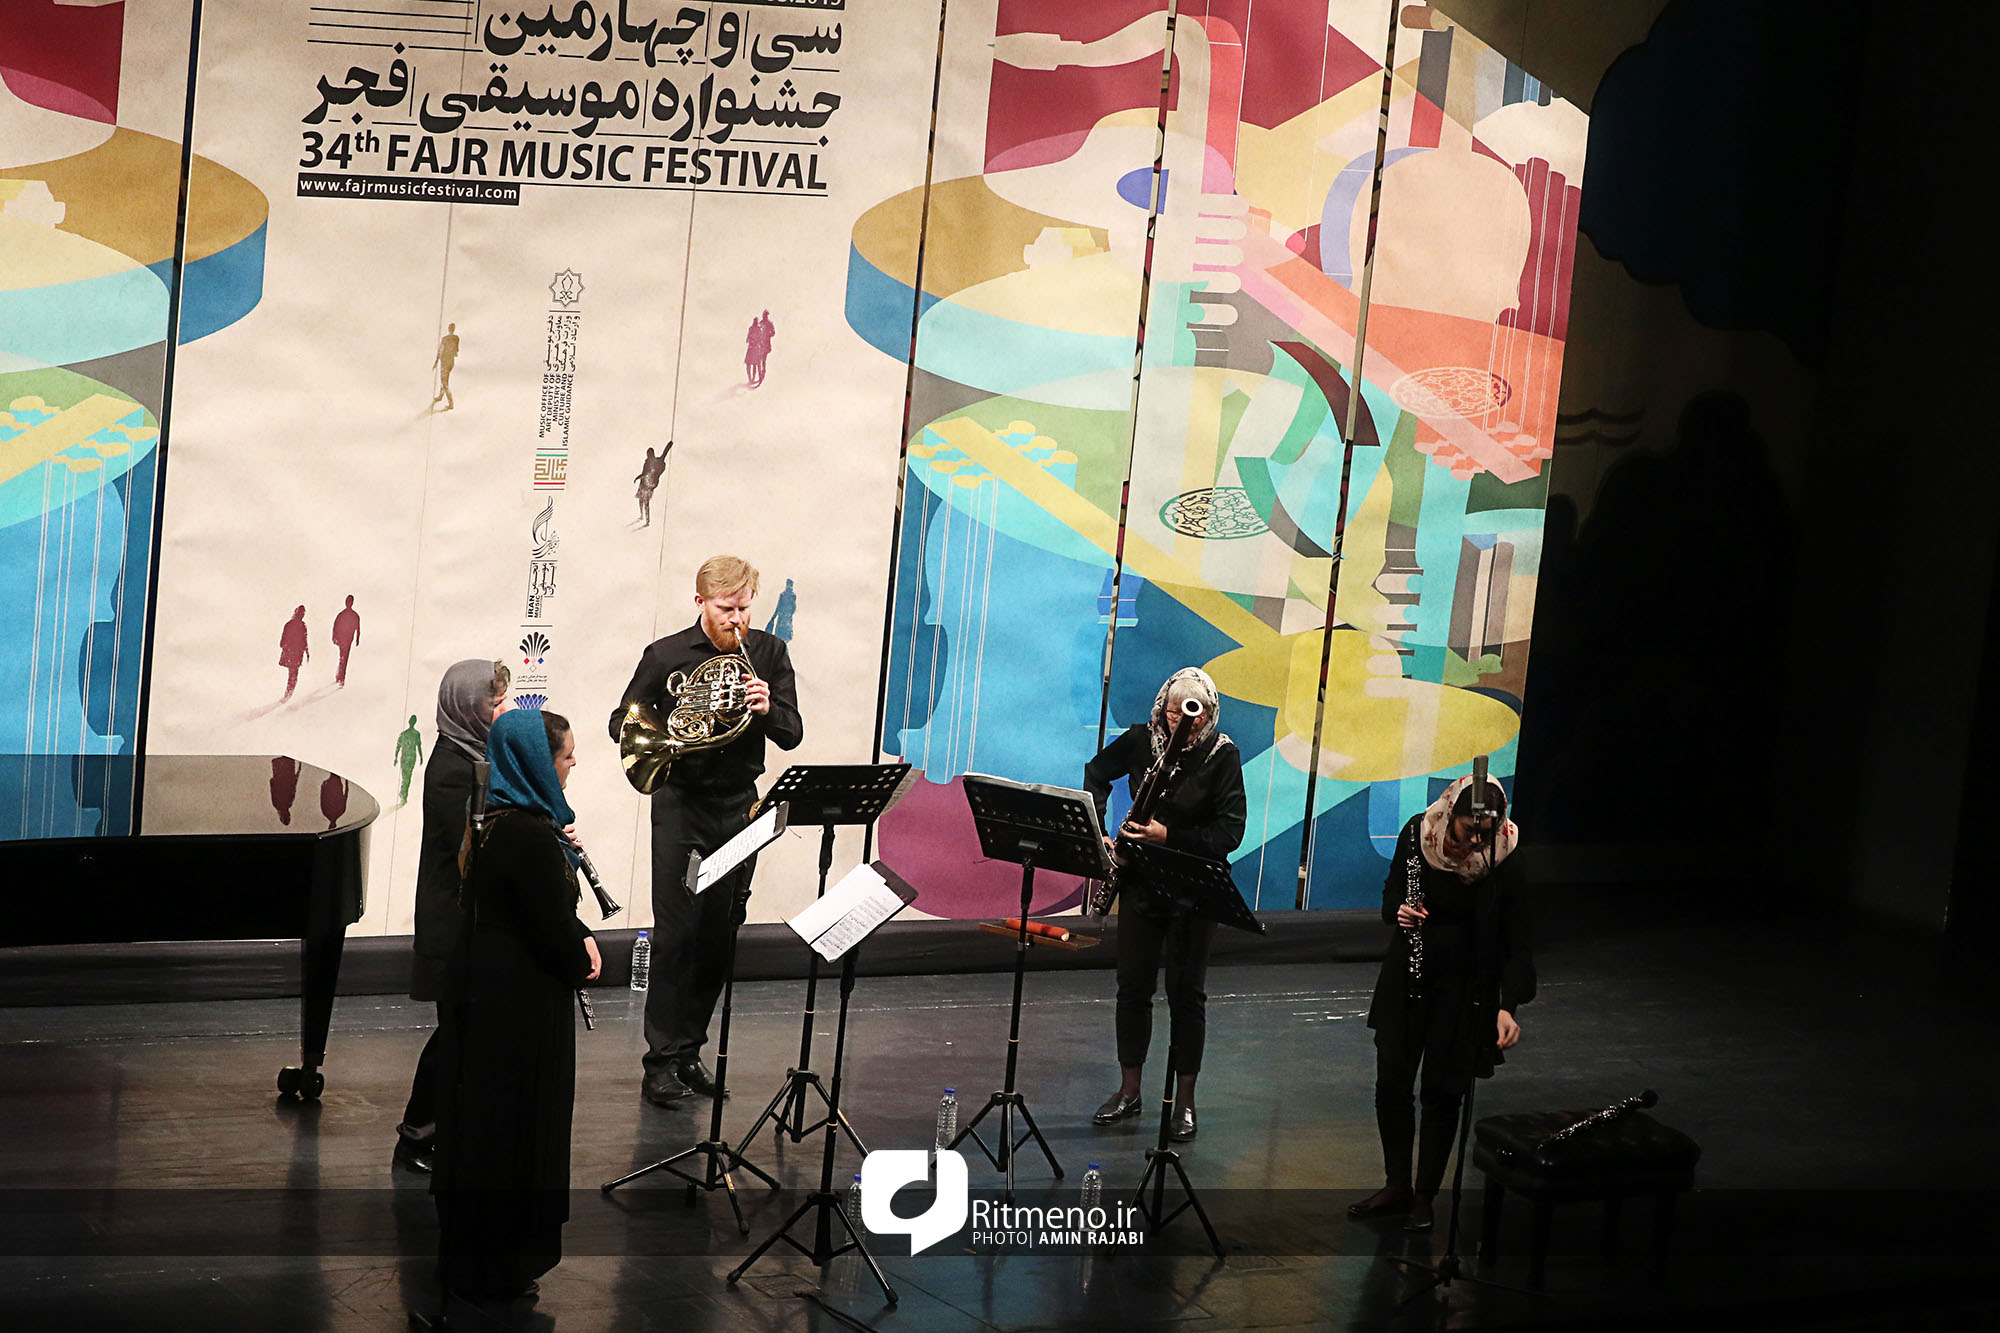 اجرای آهنگهای ایرانی توسط گروه دانمارکی